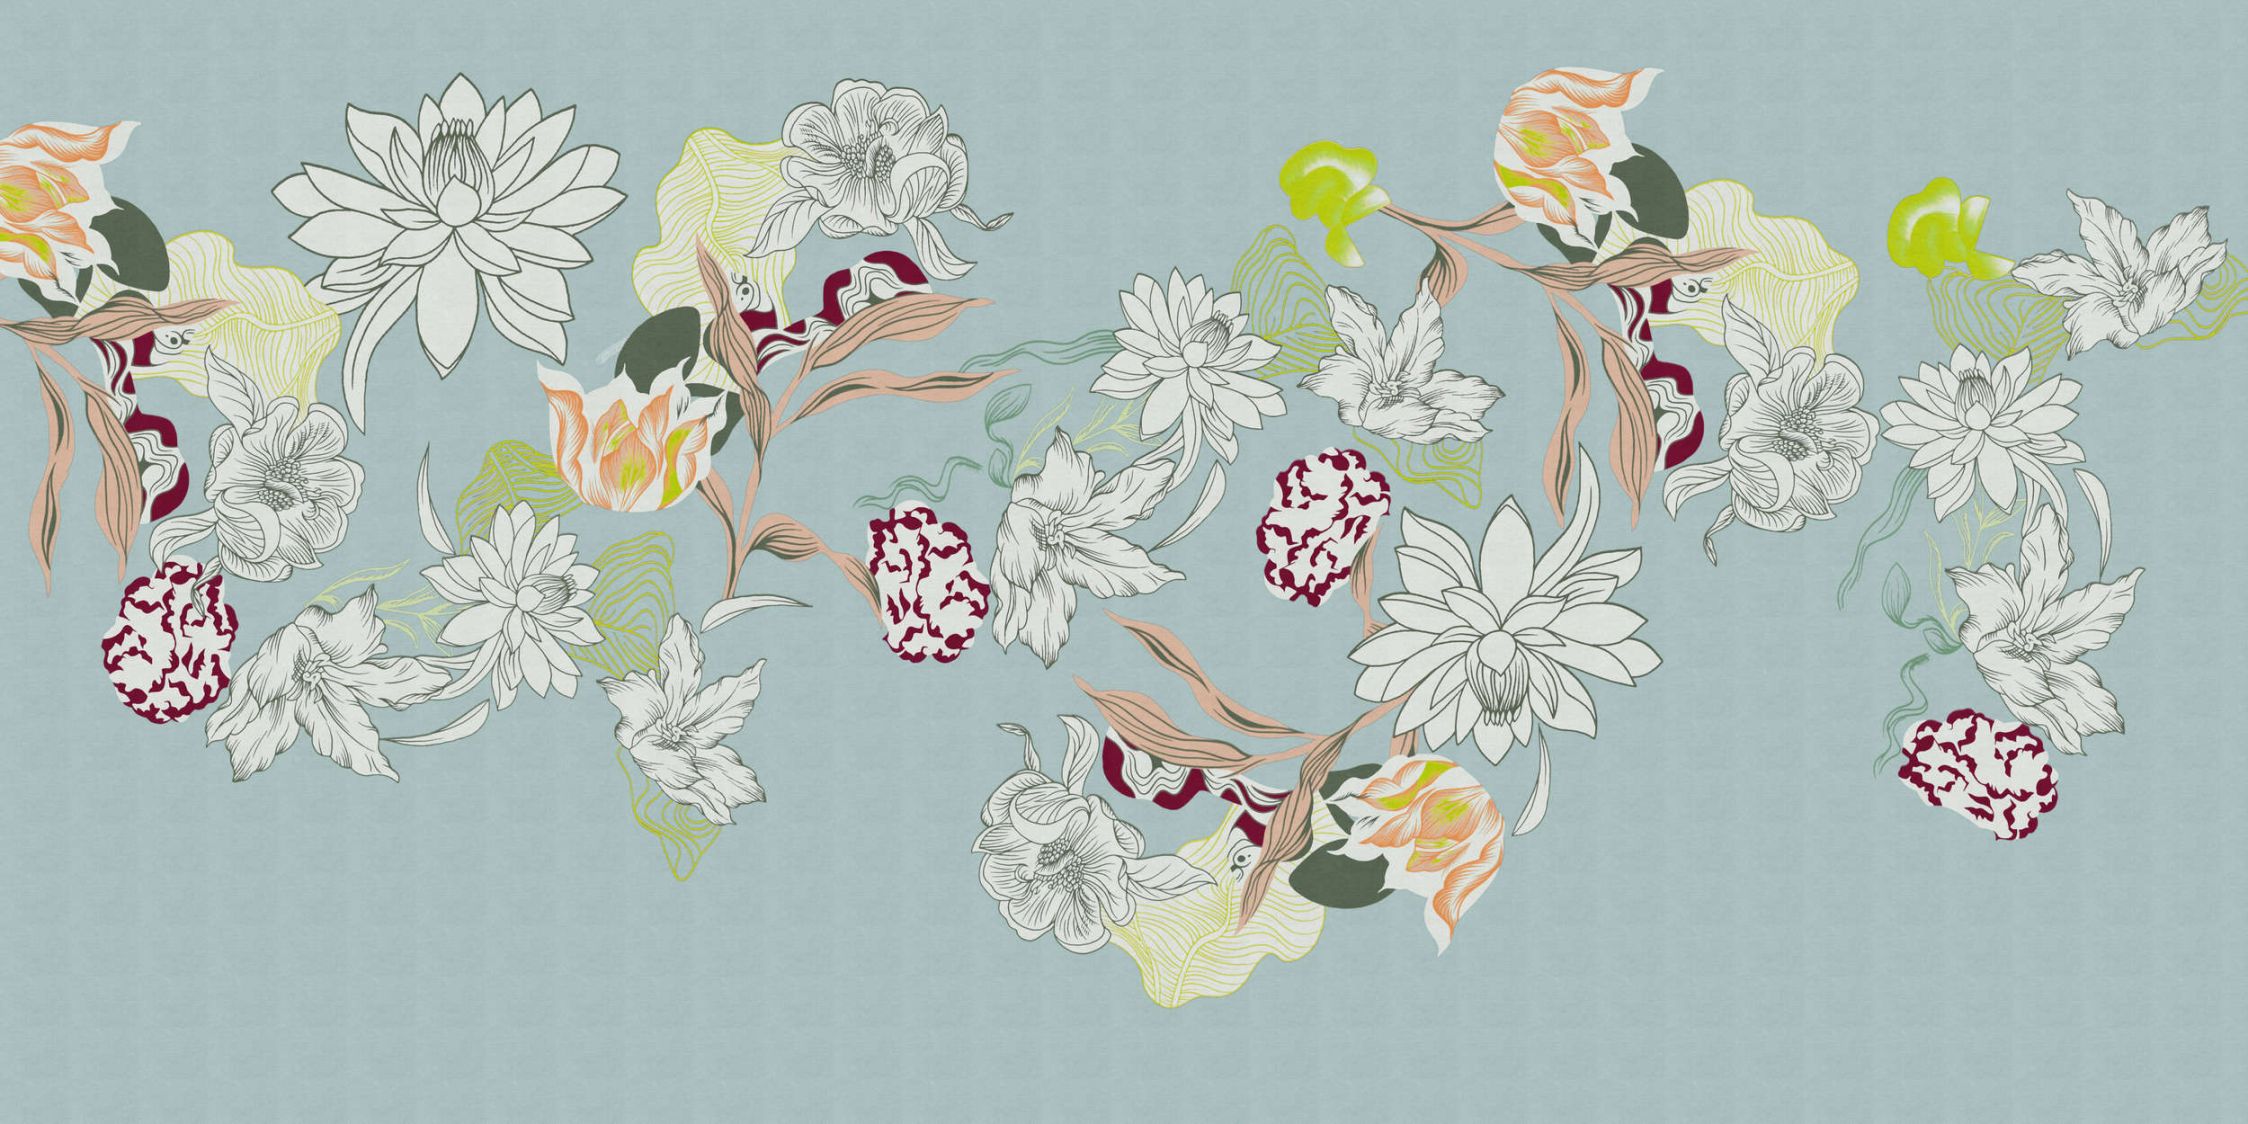             Fotomural »botany 2« - Motivos florales abstractos con toques verdes sobre una sutil textura de lino - Tela no tejida mate y lisa
        